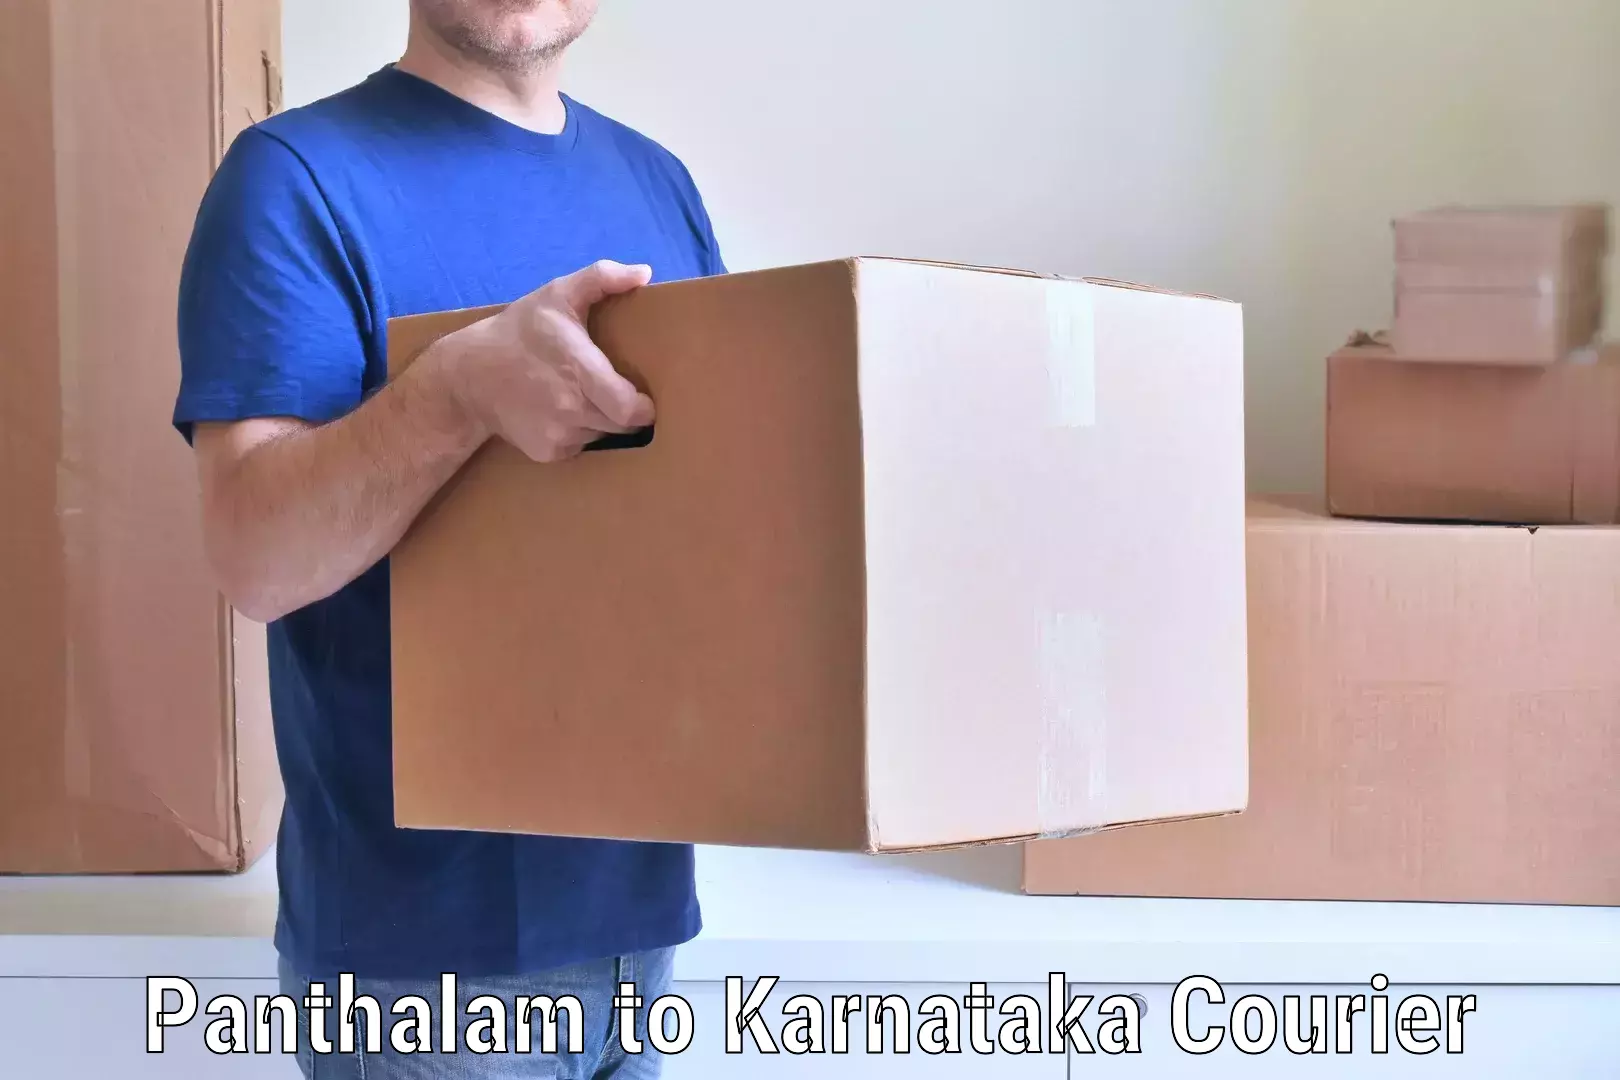 Furniture moving assistance Panthalam to Karnataka